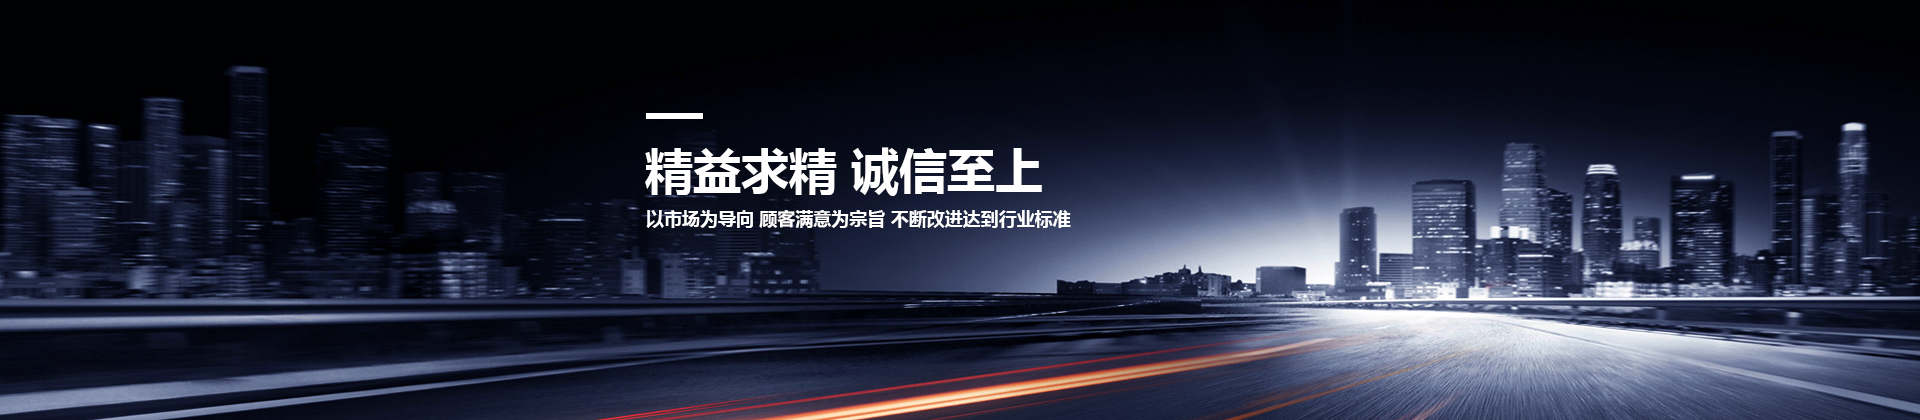 武汉云开体育·(中国)官方网站设计